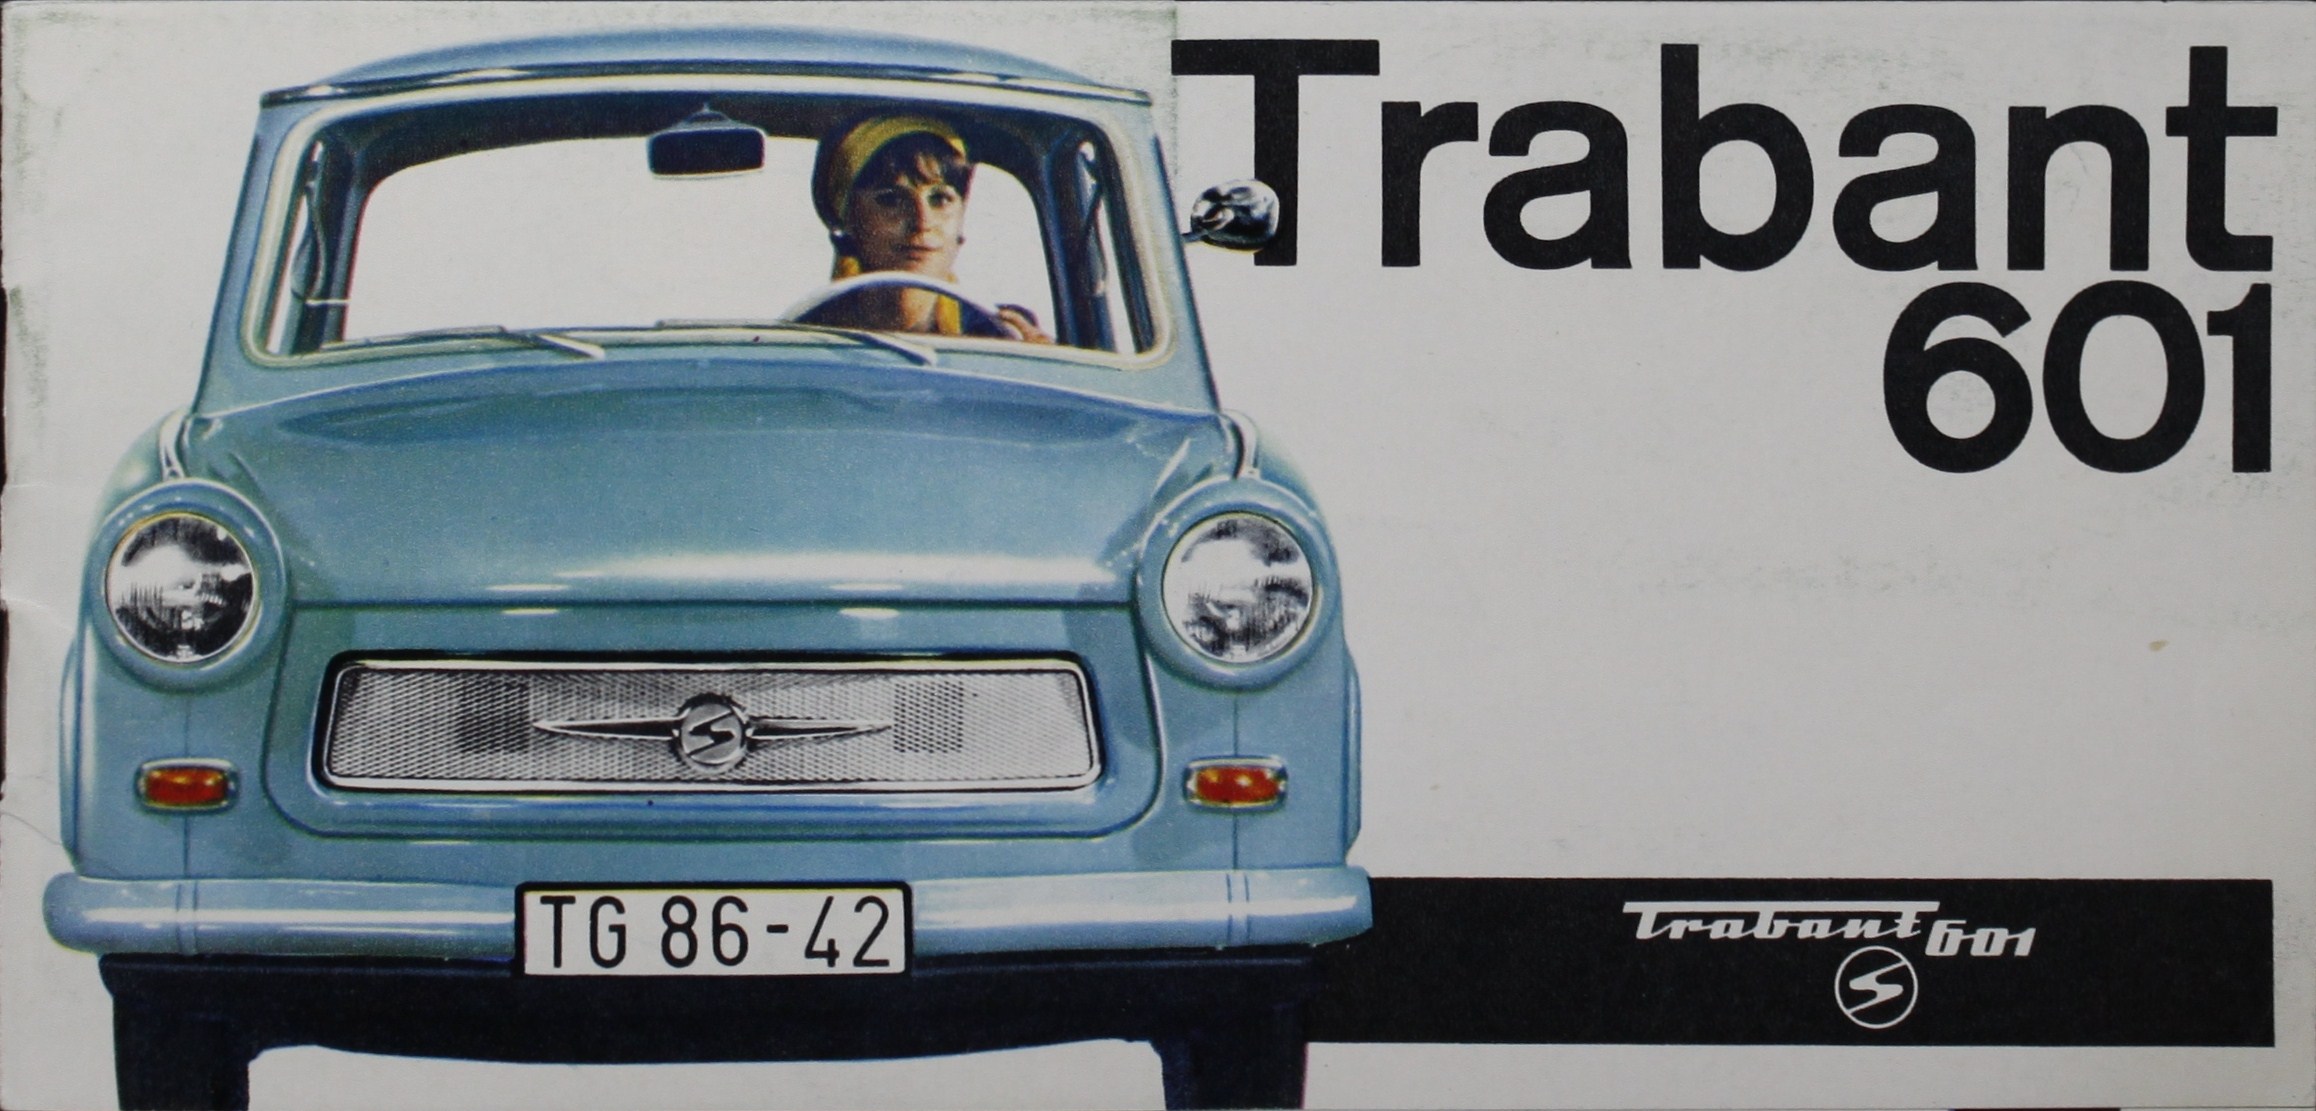 trabant-601-advert-lauren-blog-1.jpg